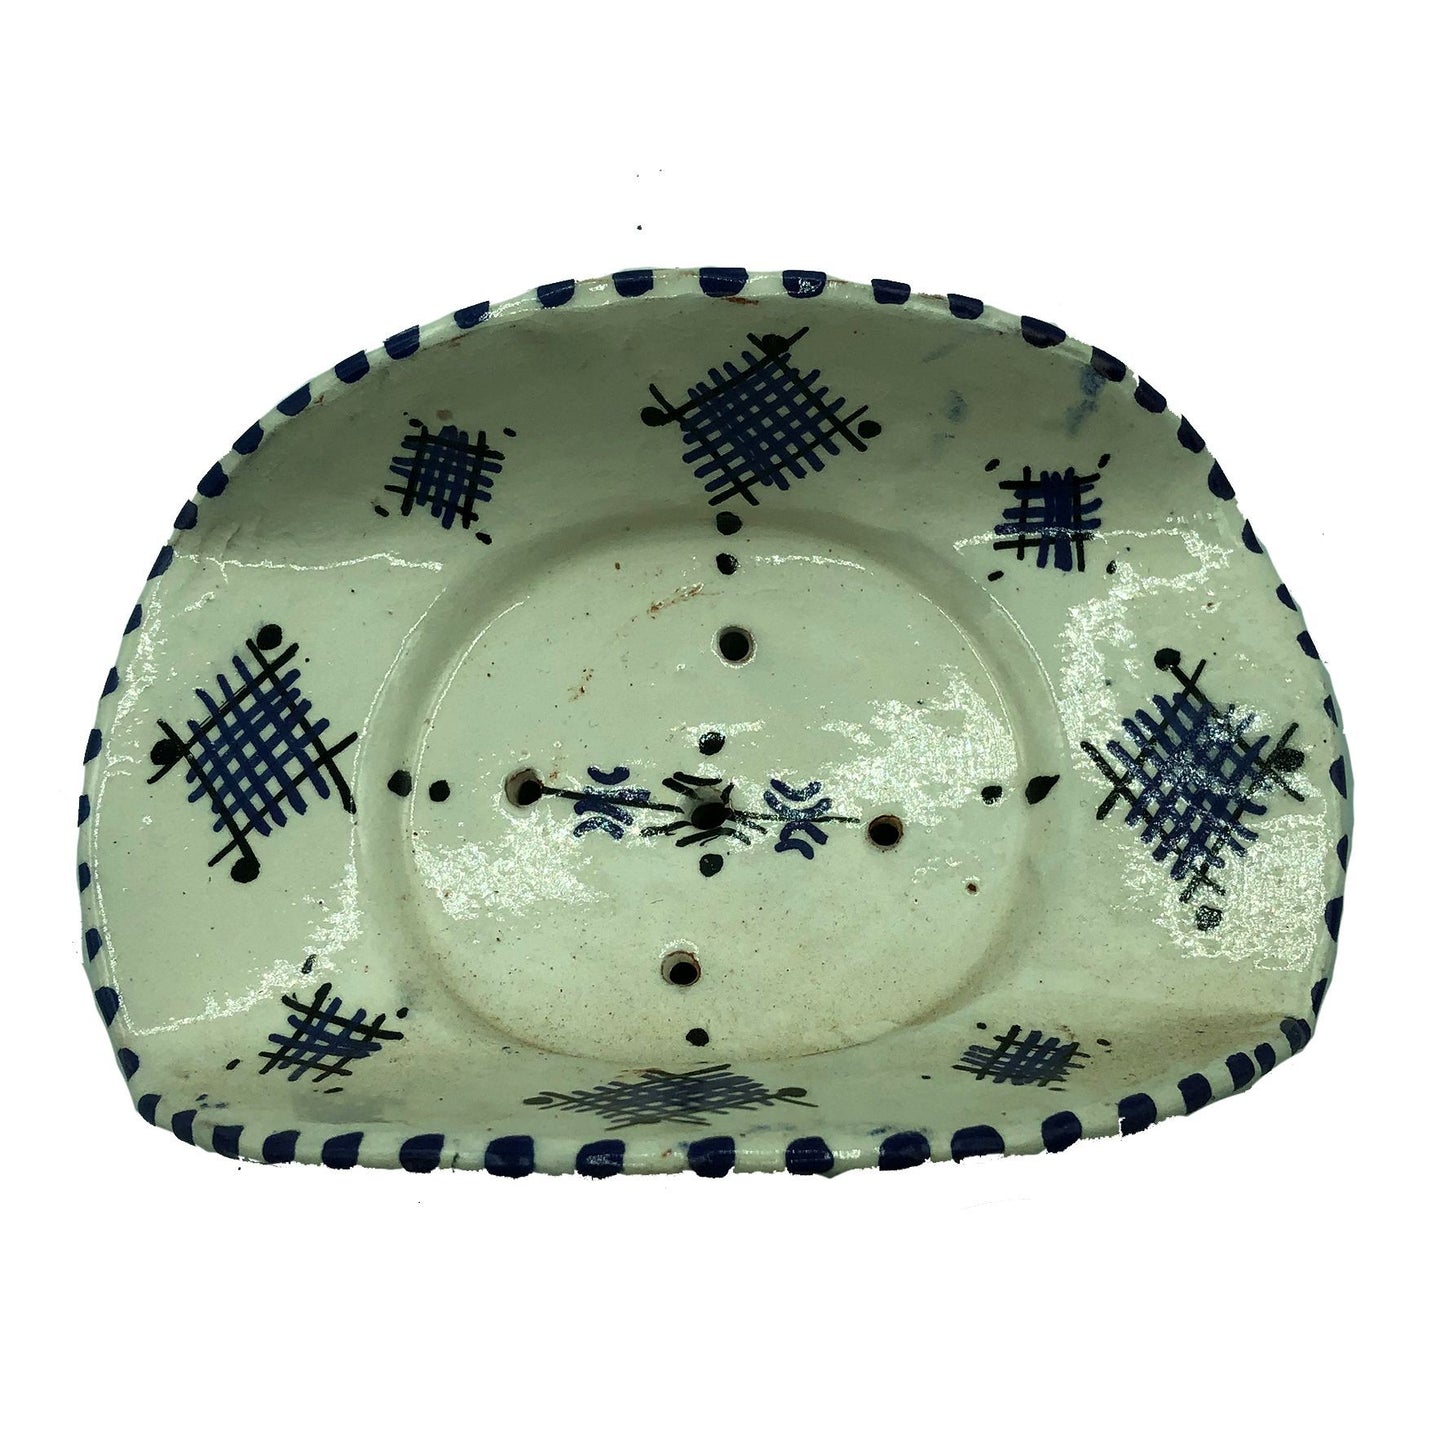 Arredamento Etnico Porta Sapone Ceramica Terre Cuite Artigiano Marocco 1904211010